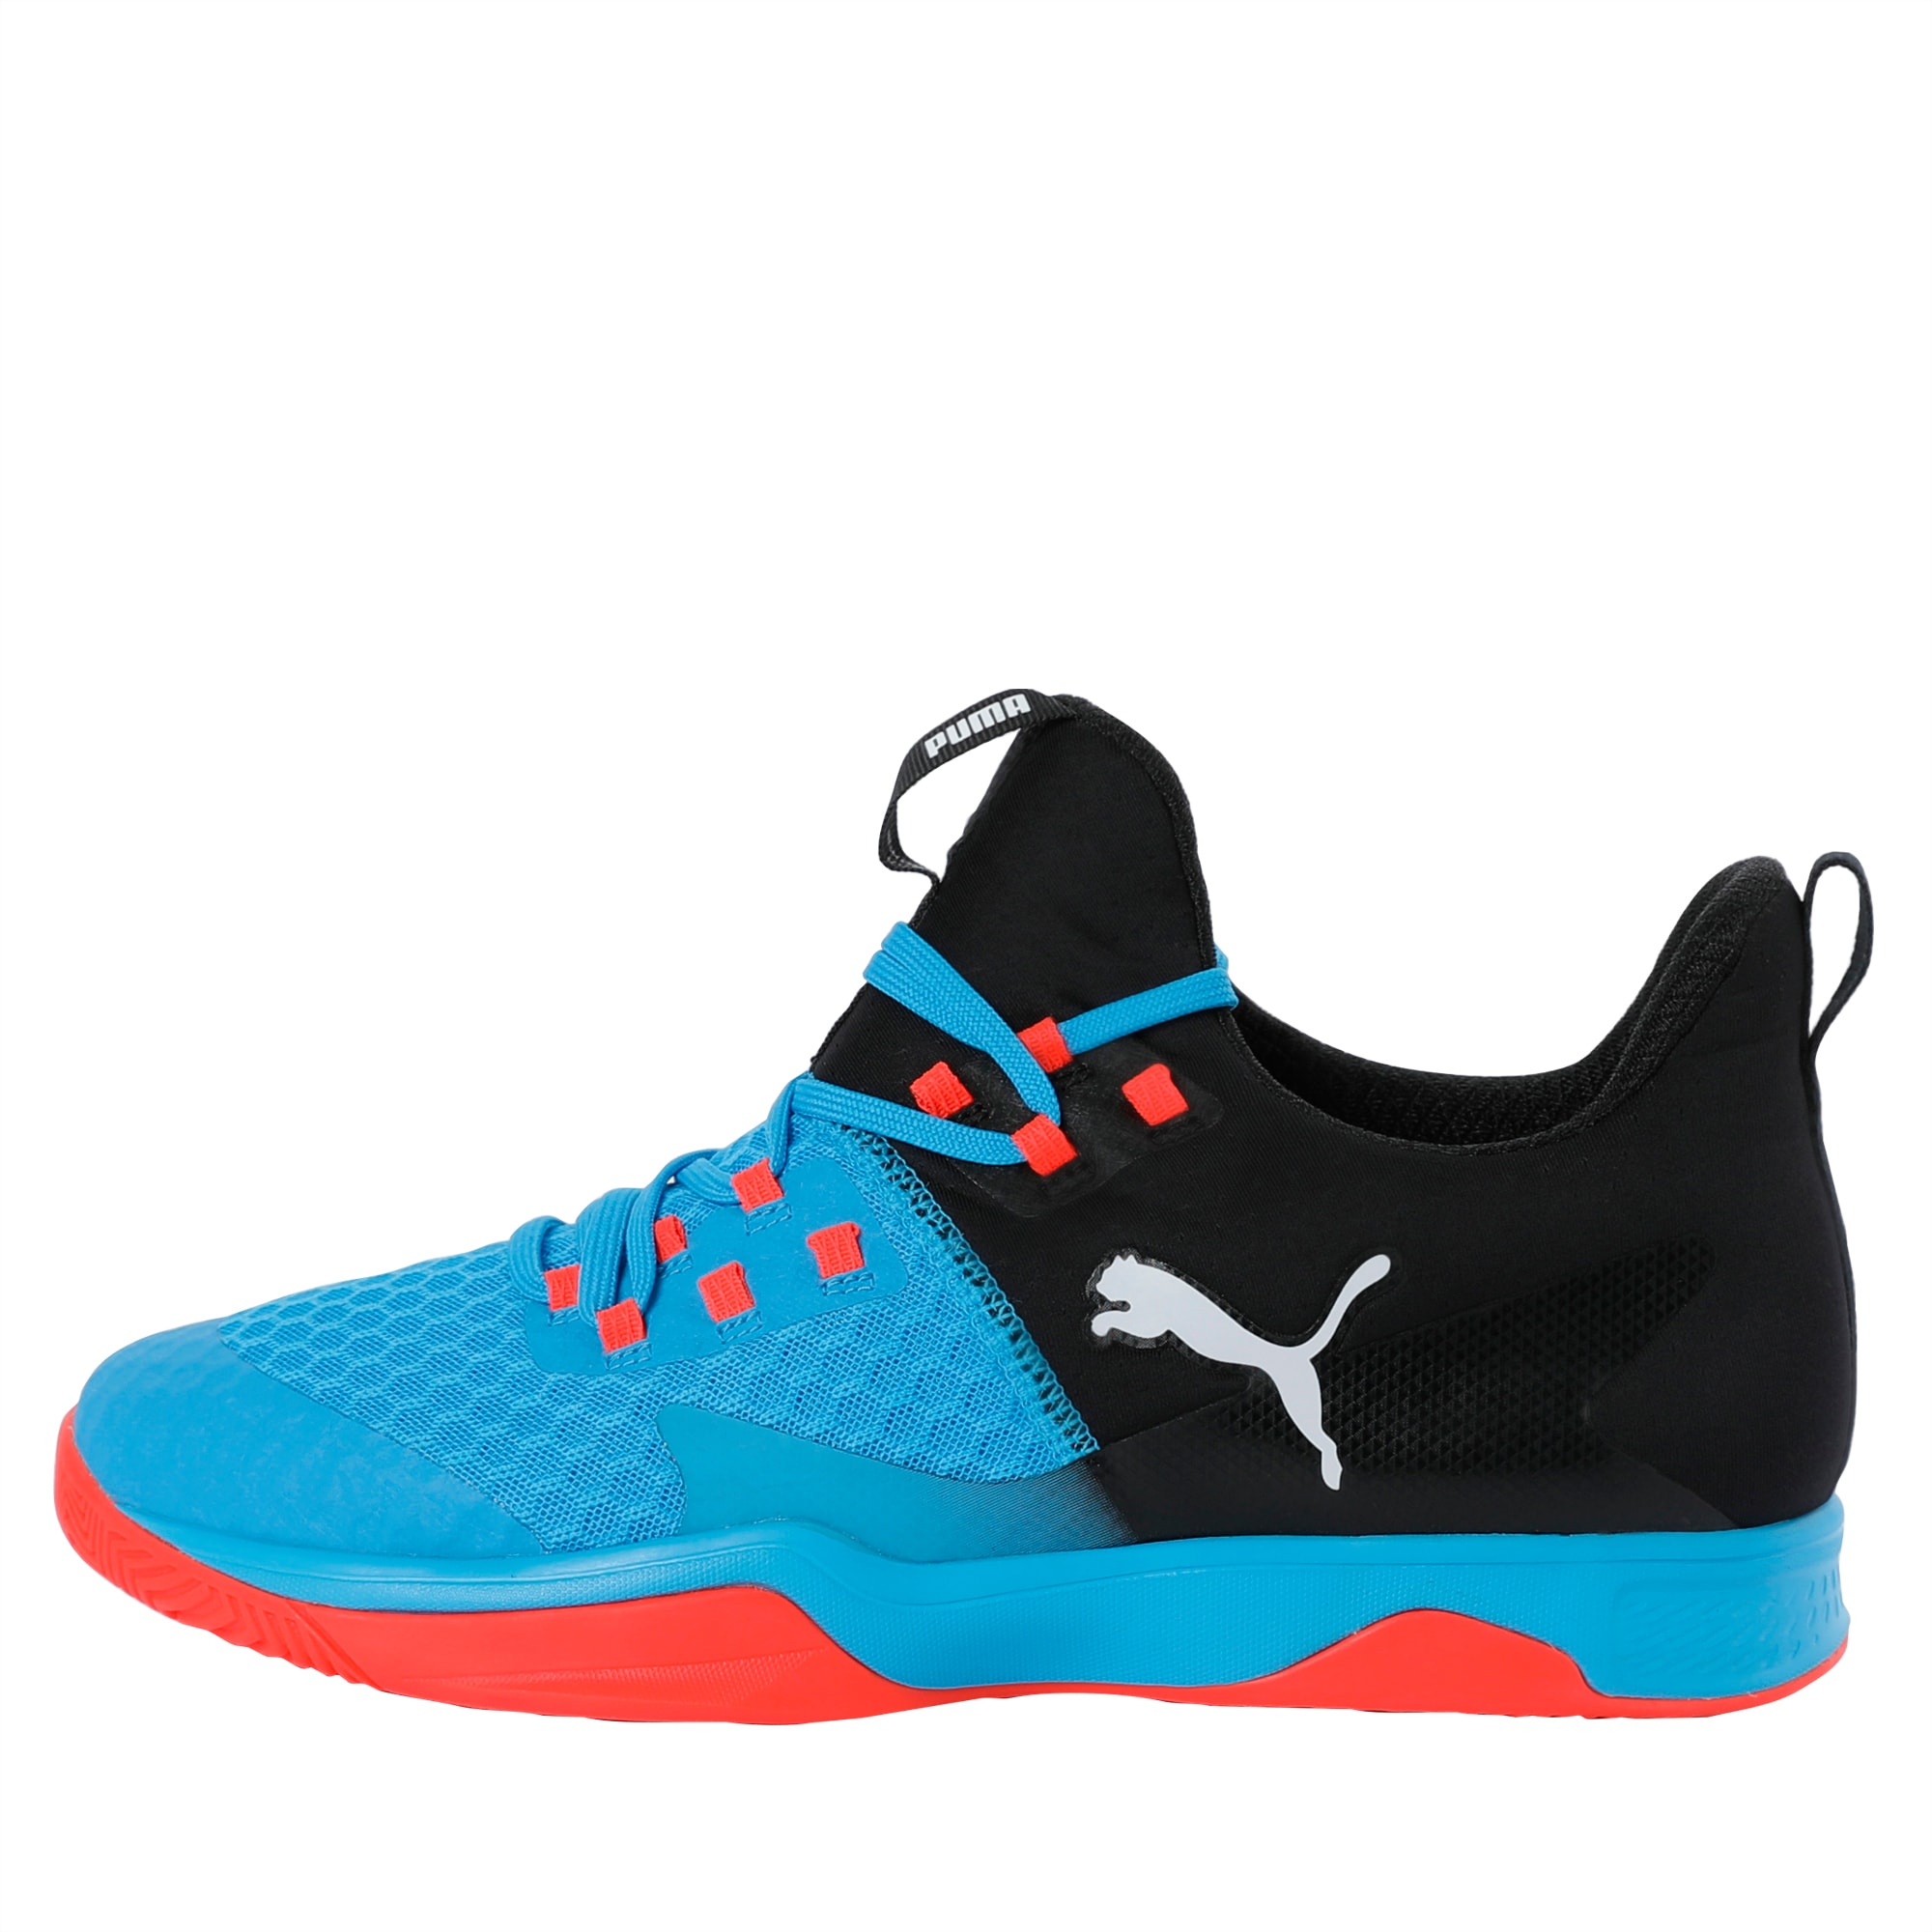 Rise XT 3 Indoor Teamsport Shoes | Bleu Azur-Red Blast-Puma Black | PUMA Shoes PUMA